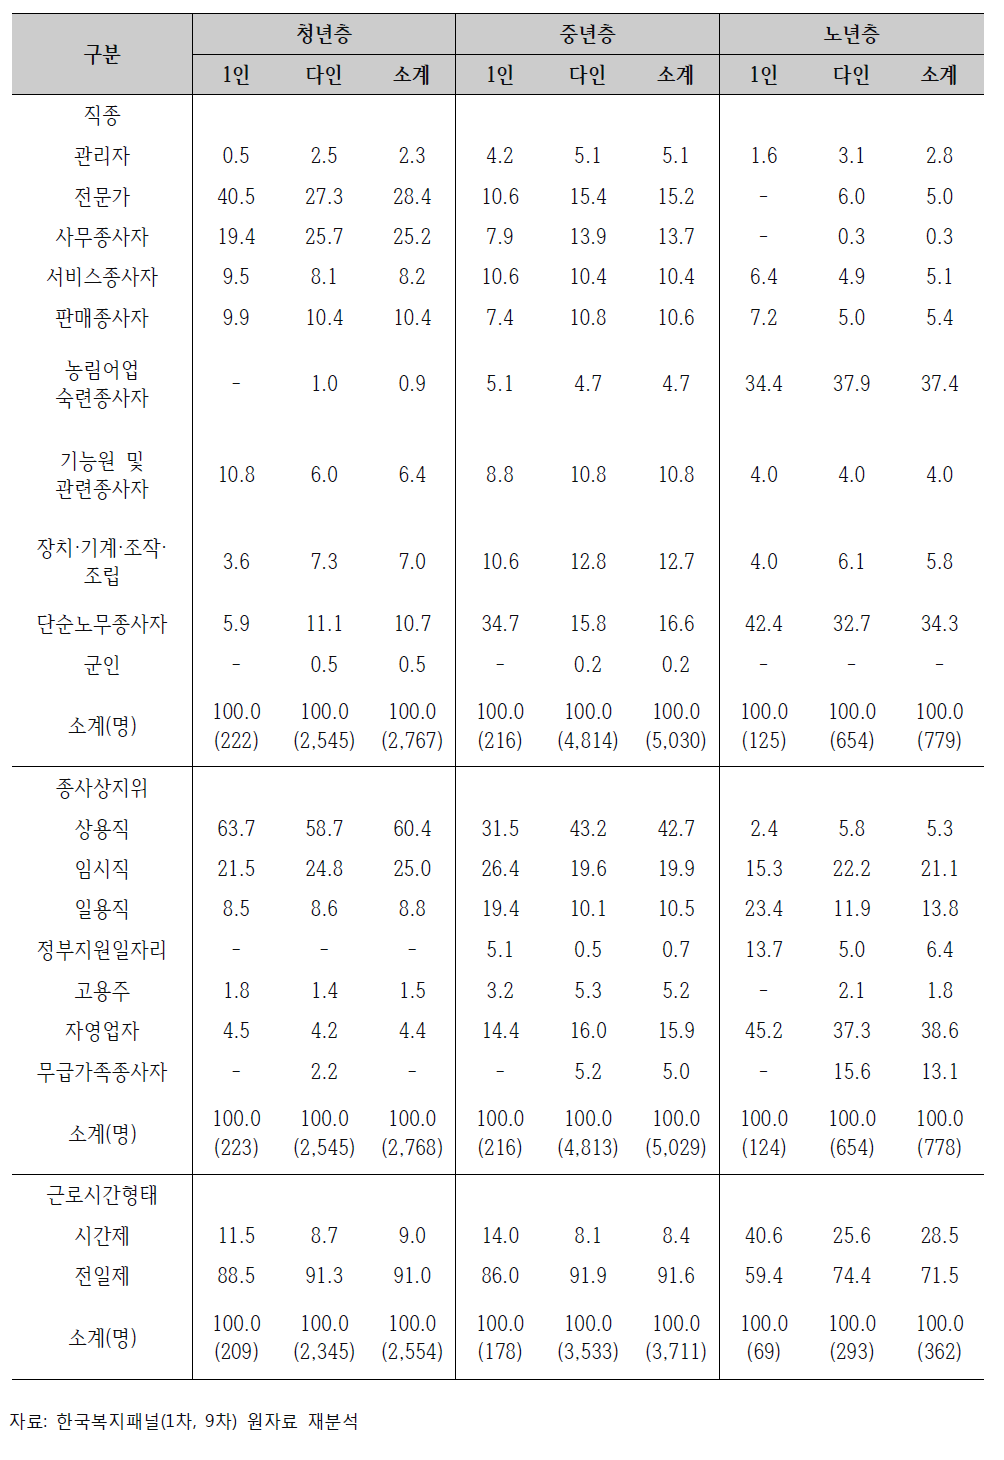 연령계층별 종사 직종 및 종사상 지위 비교(2013년 12월 31일 기준) (단위: %)